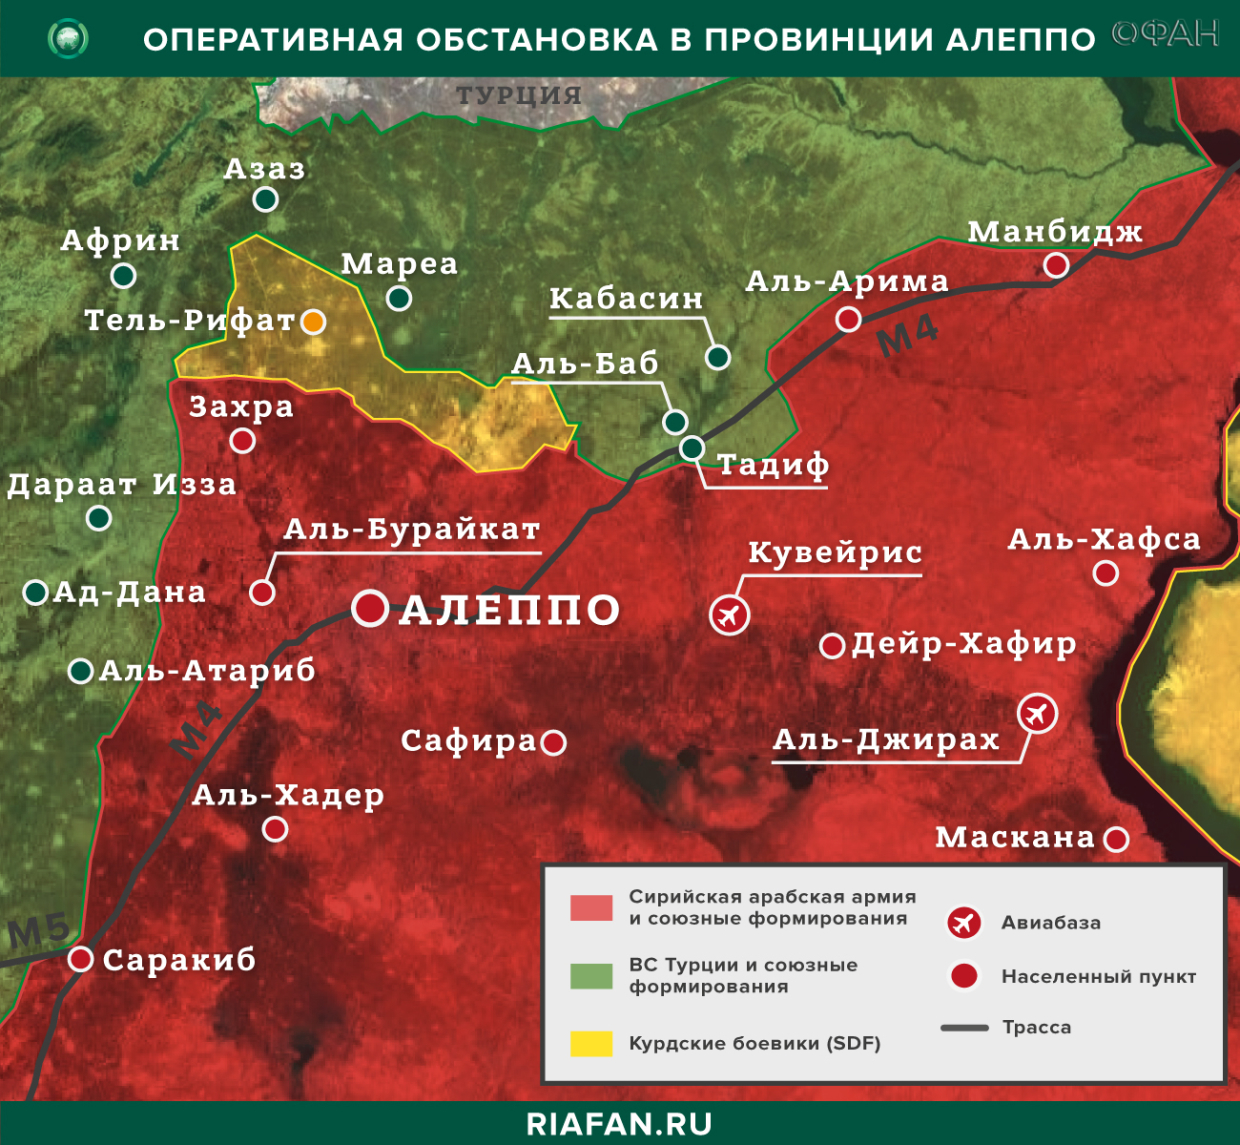 叙利亚新闻 31 八月 16.30: 土耳其武装部队开始在伊德利卜建设新检查站